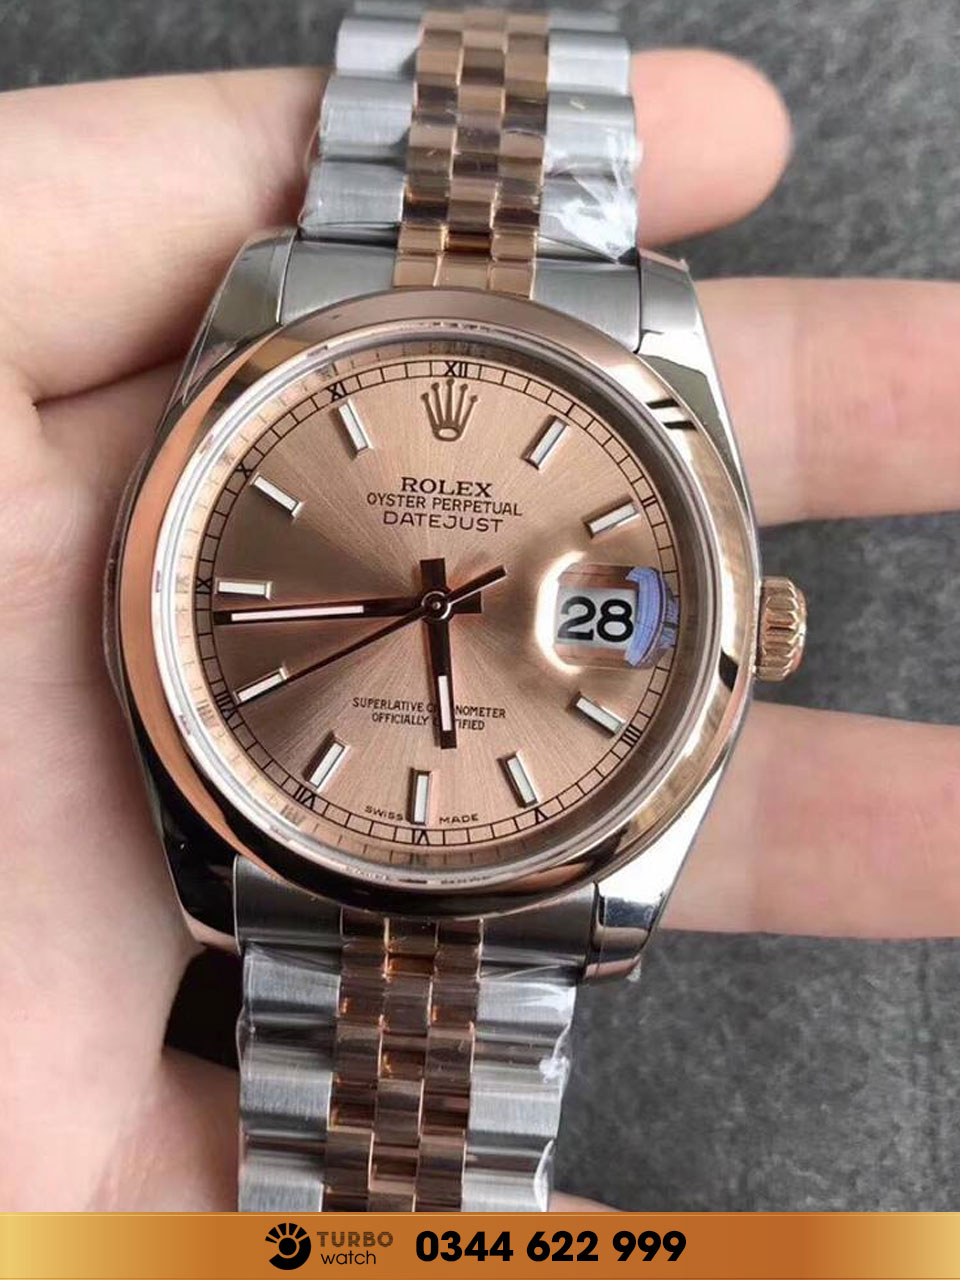 Muôn màu muôn vẻ đồng hồ Rolex fake? Nên chọn loại nào tốt nhất